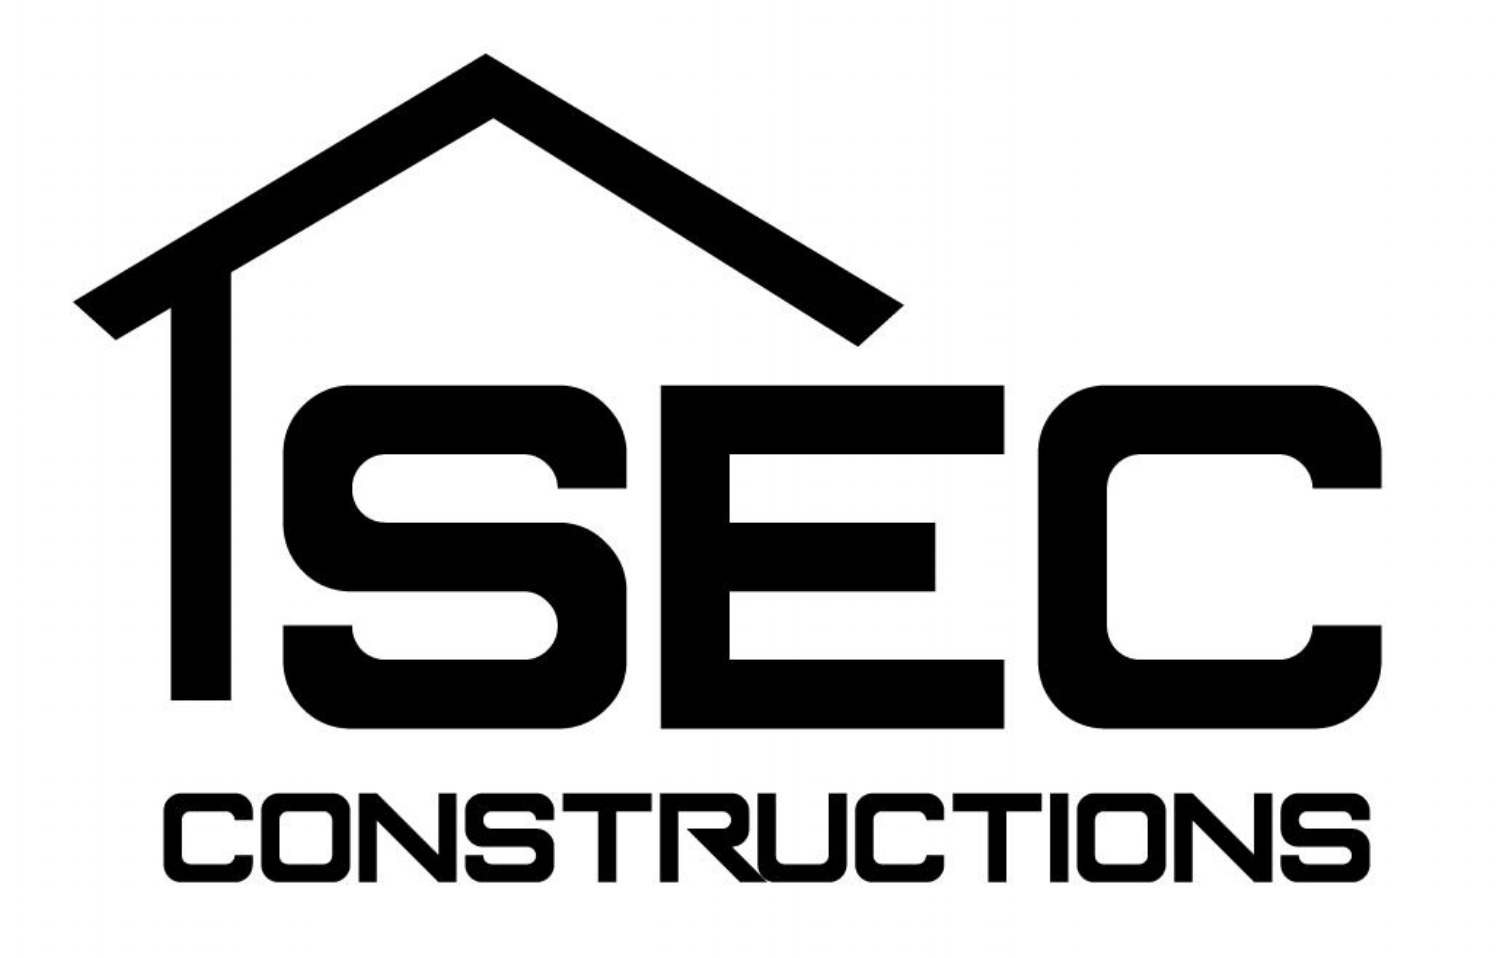 SEC Constructions